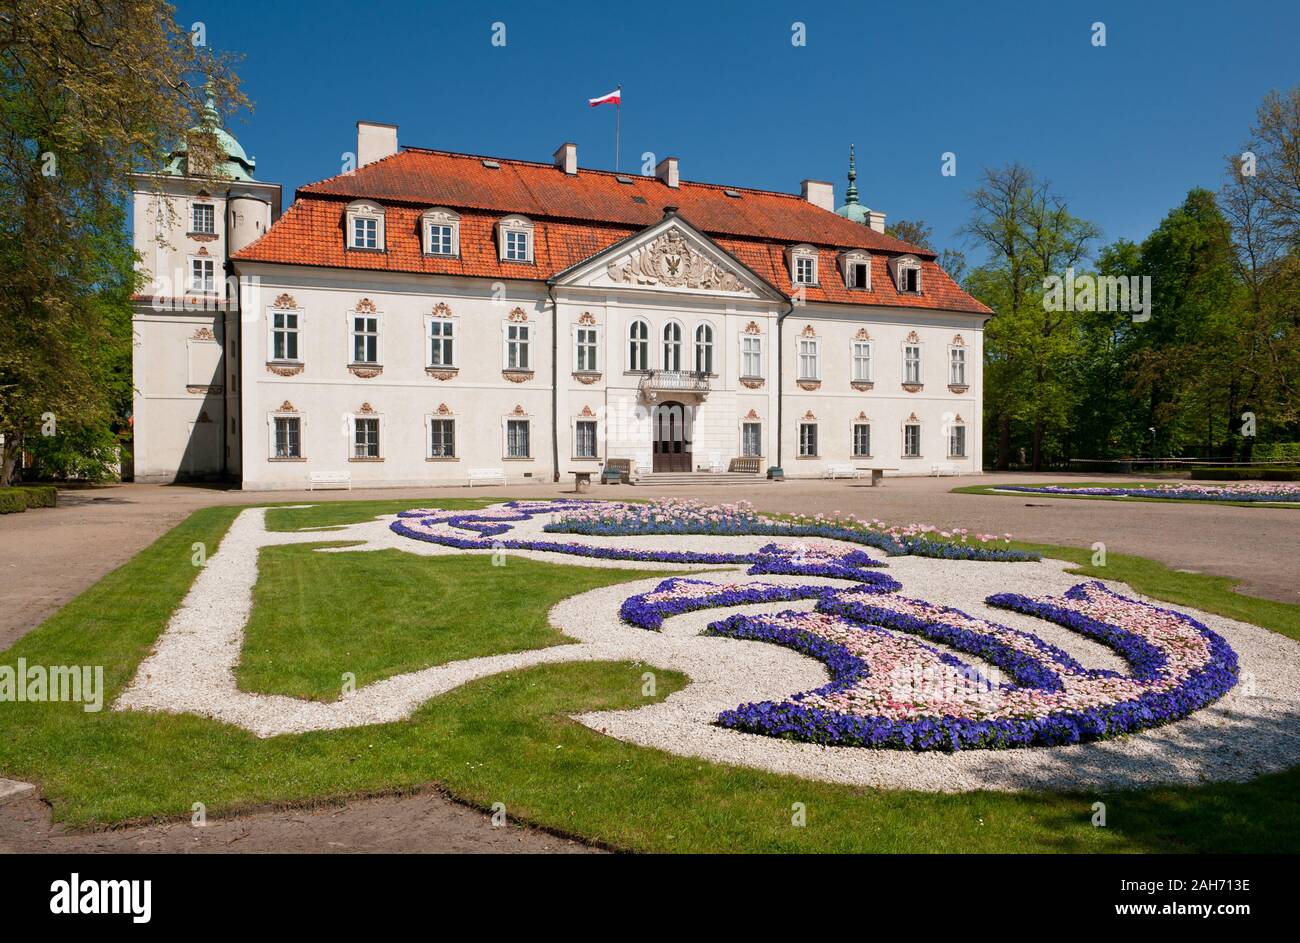 En vista del Palacio Radziwiłł en Nieborów exterior en Polonia, Europa, edificio fuera vistas al jardín barroco ornamental, visitando lugares turísticos. Foto de stock